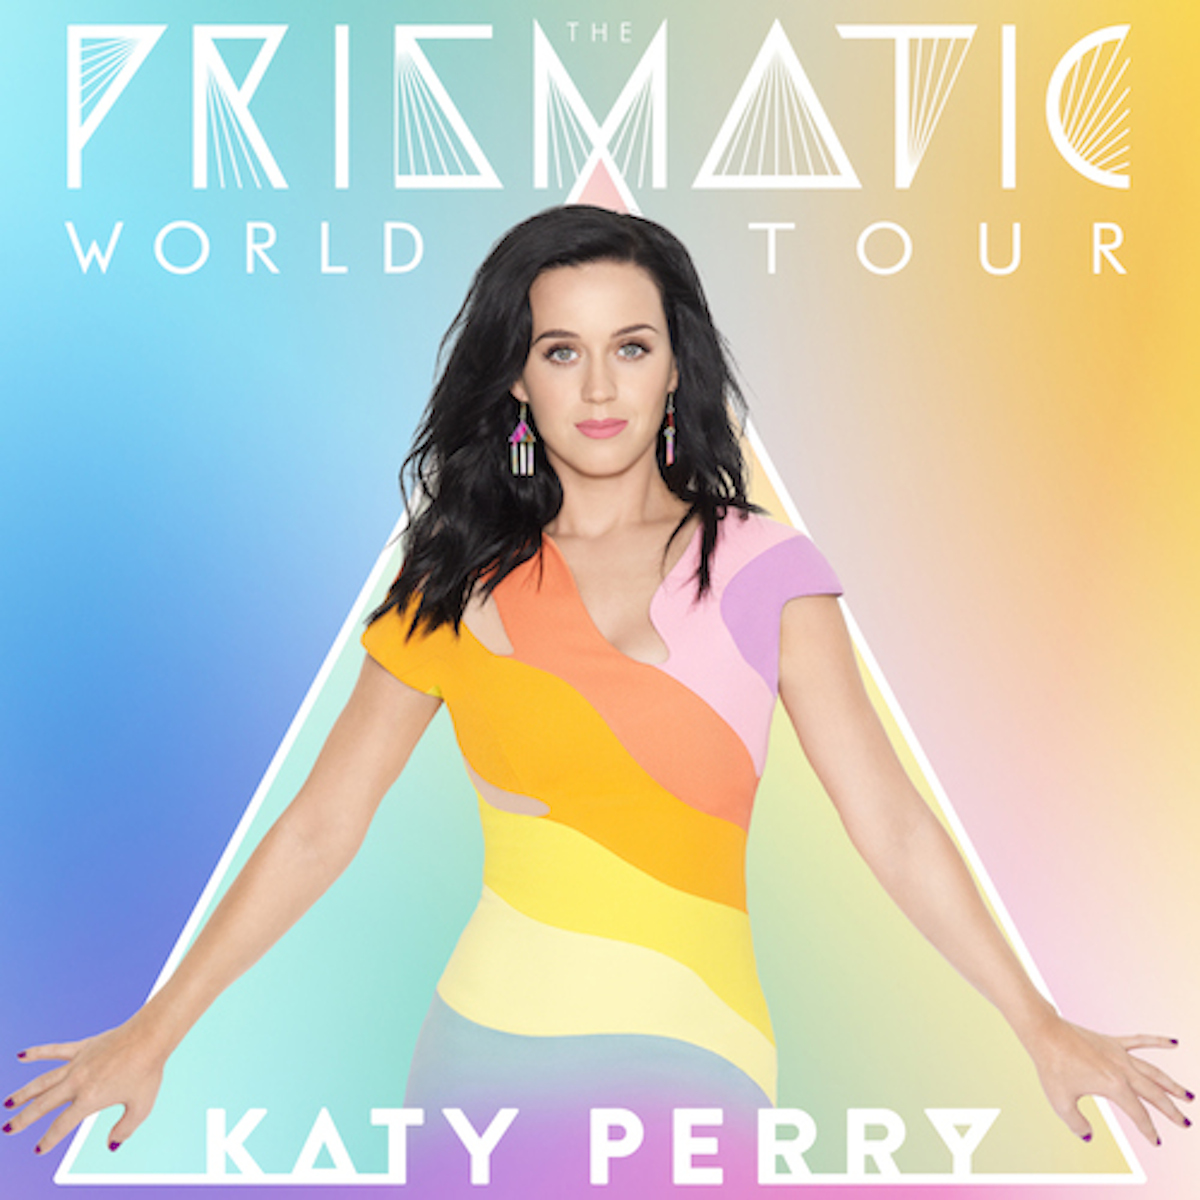 prismatic world tour setlist